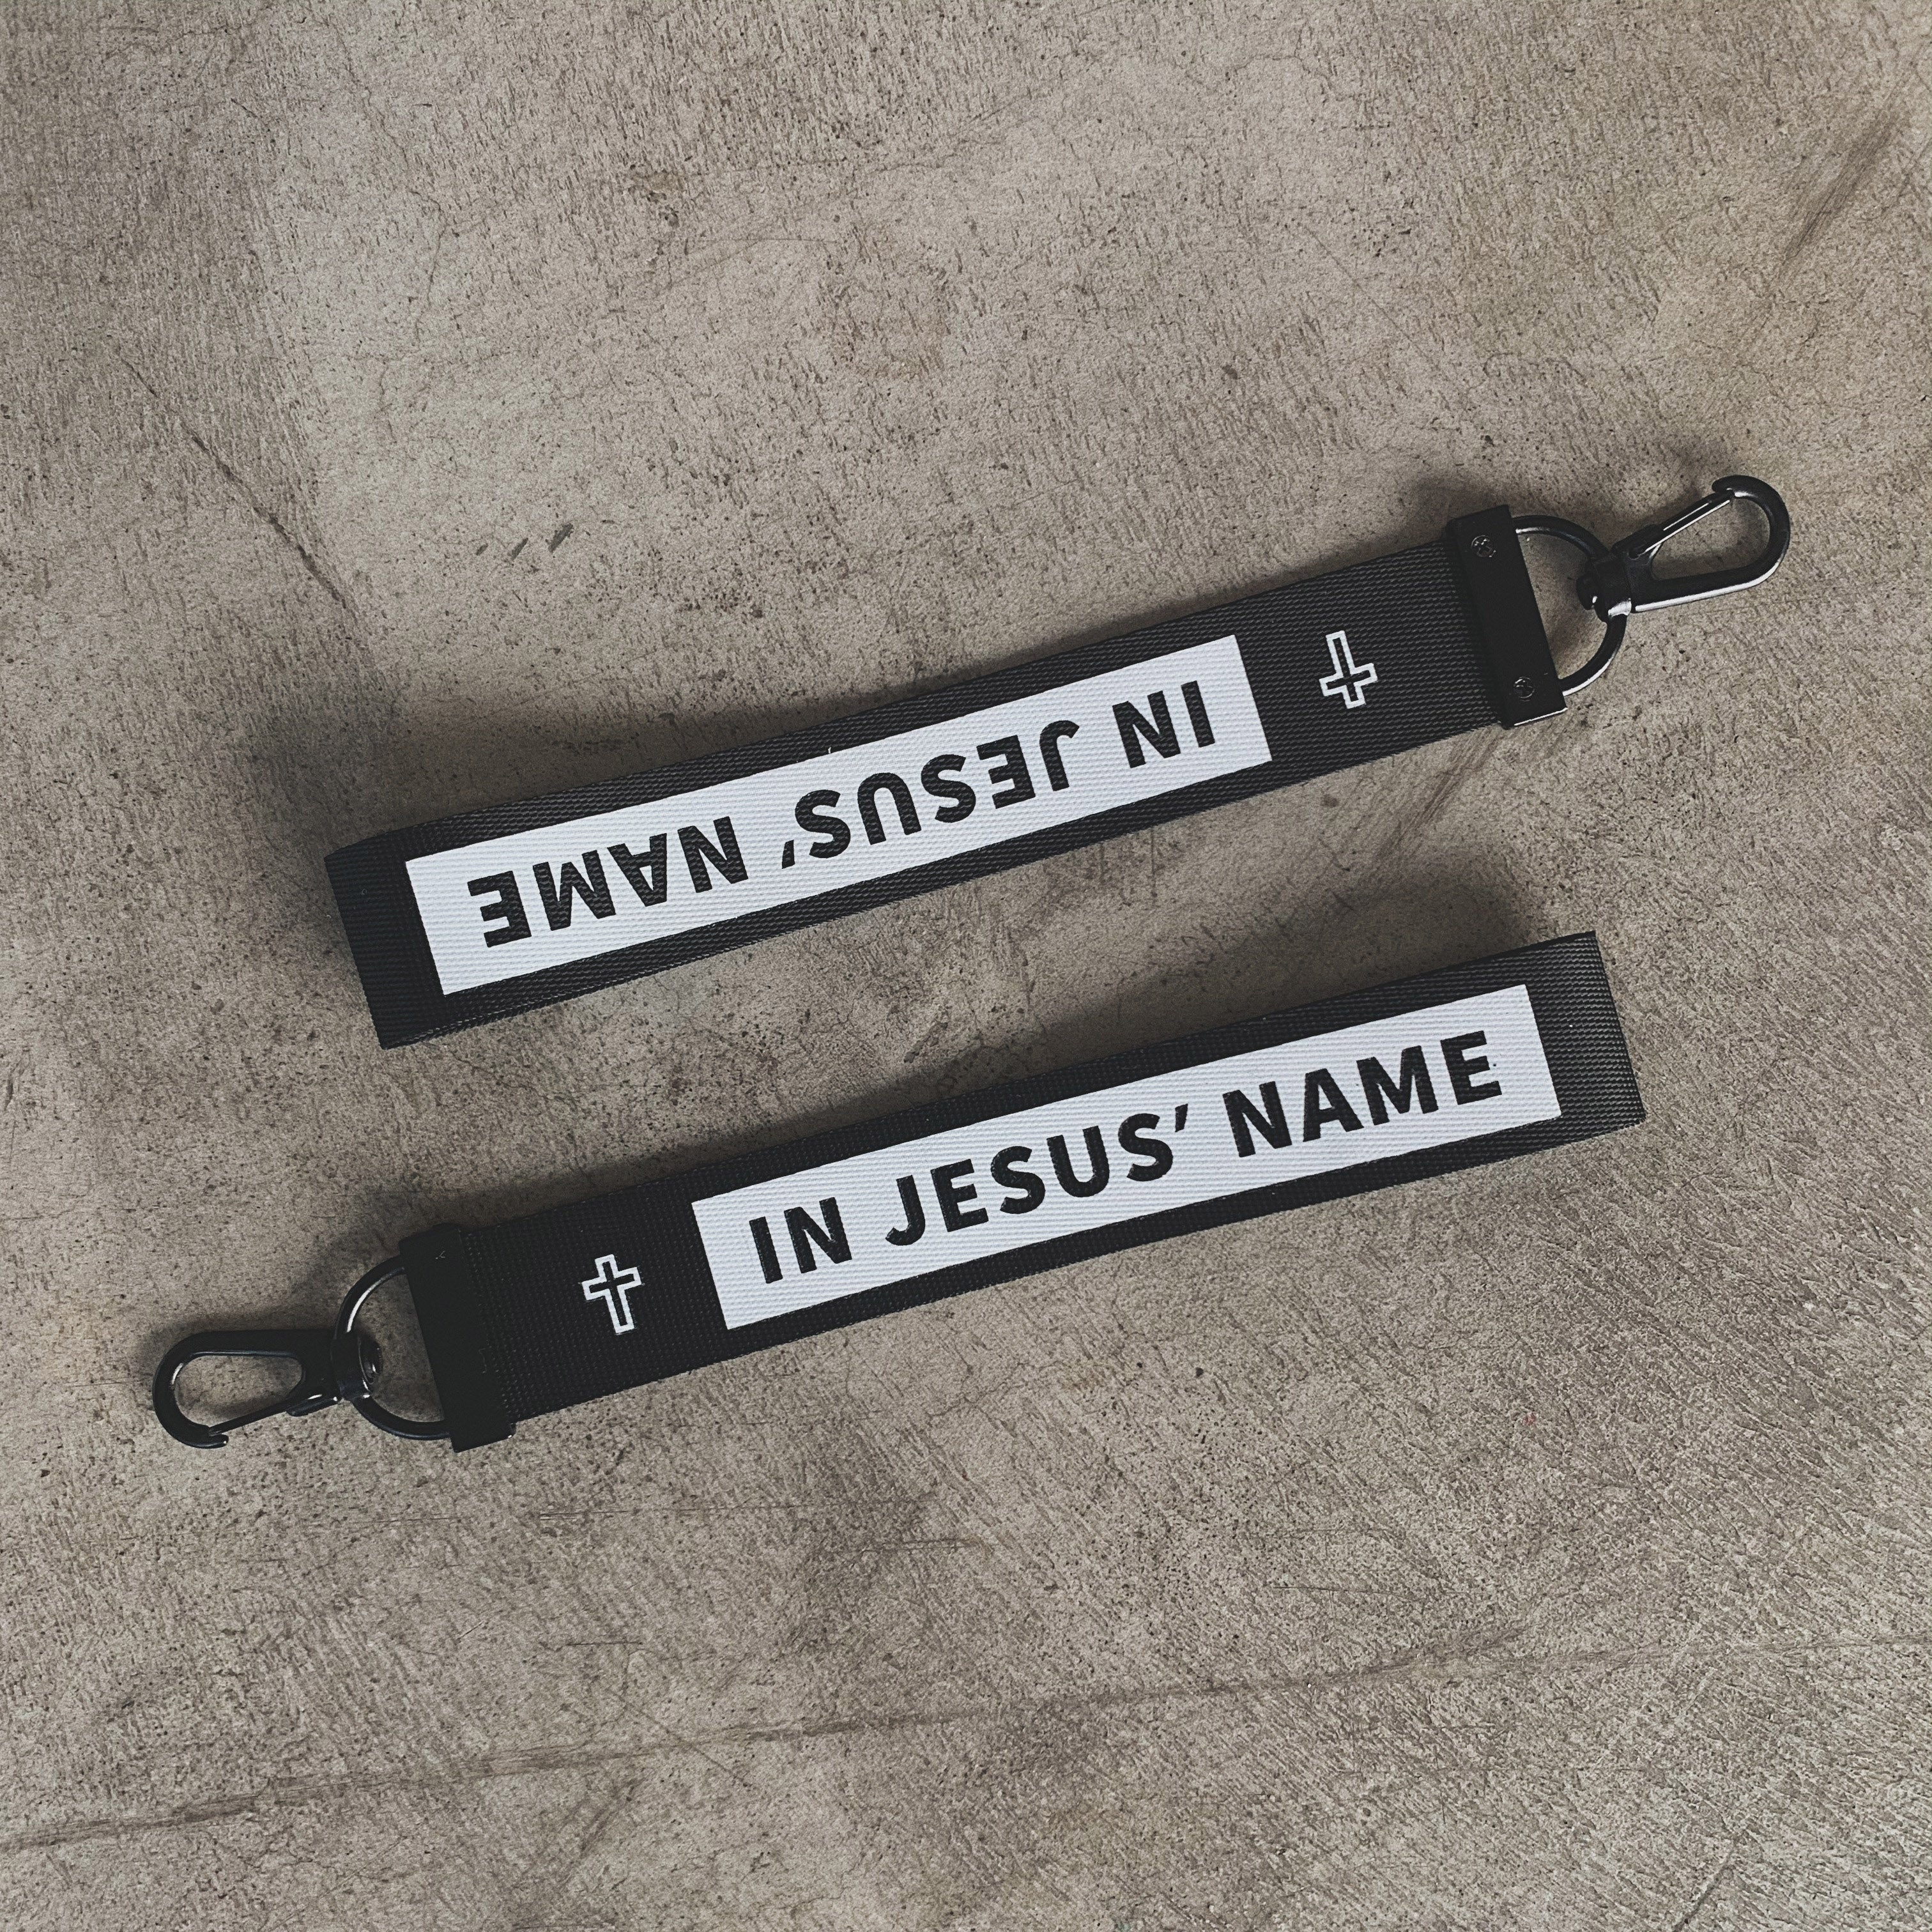 IN JESUS‘ NAME 钥匙扣